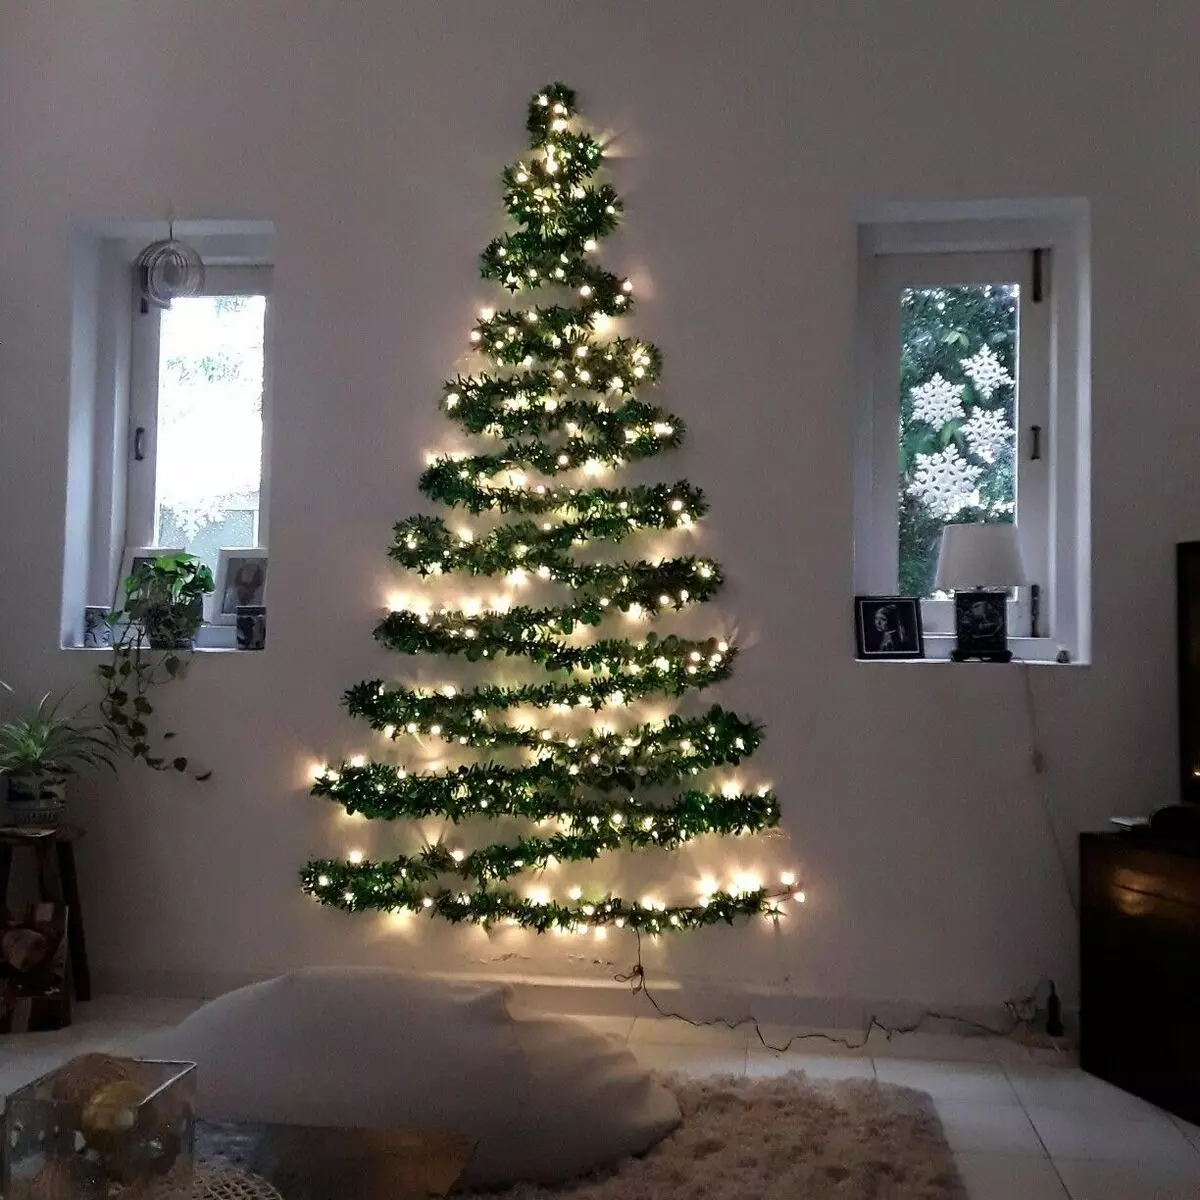 Ako zdobí vianočný strom s vencom? Ako správne a krásne obliekať to podľa schémy s žiariace elektrickej girlandami a ďalšie veniec? 7630_43